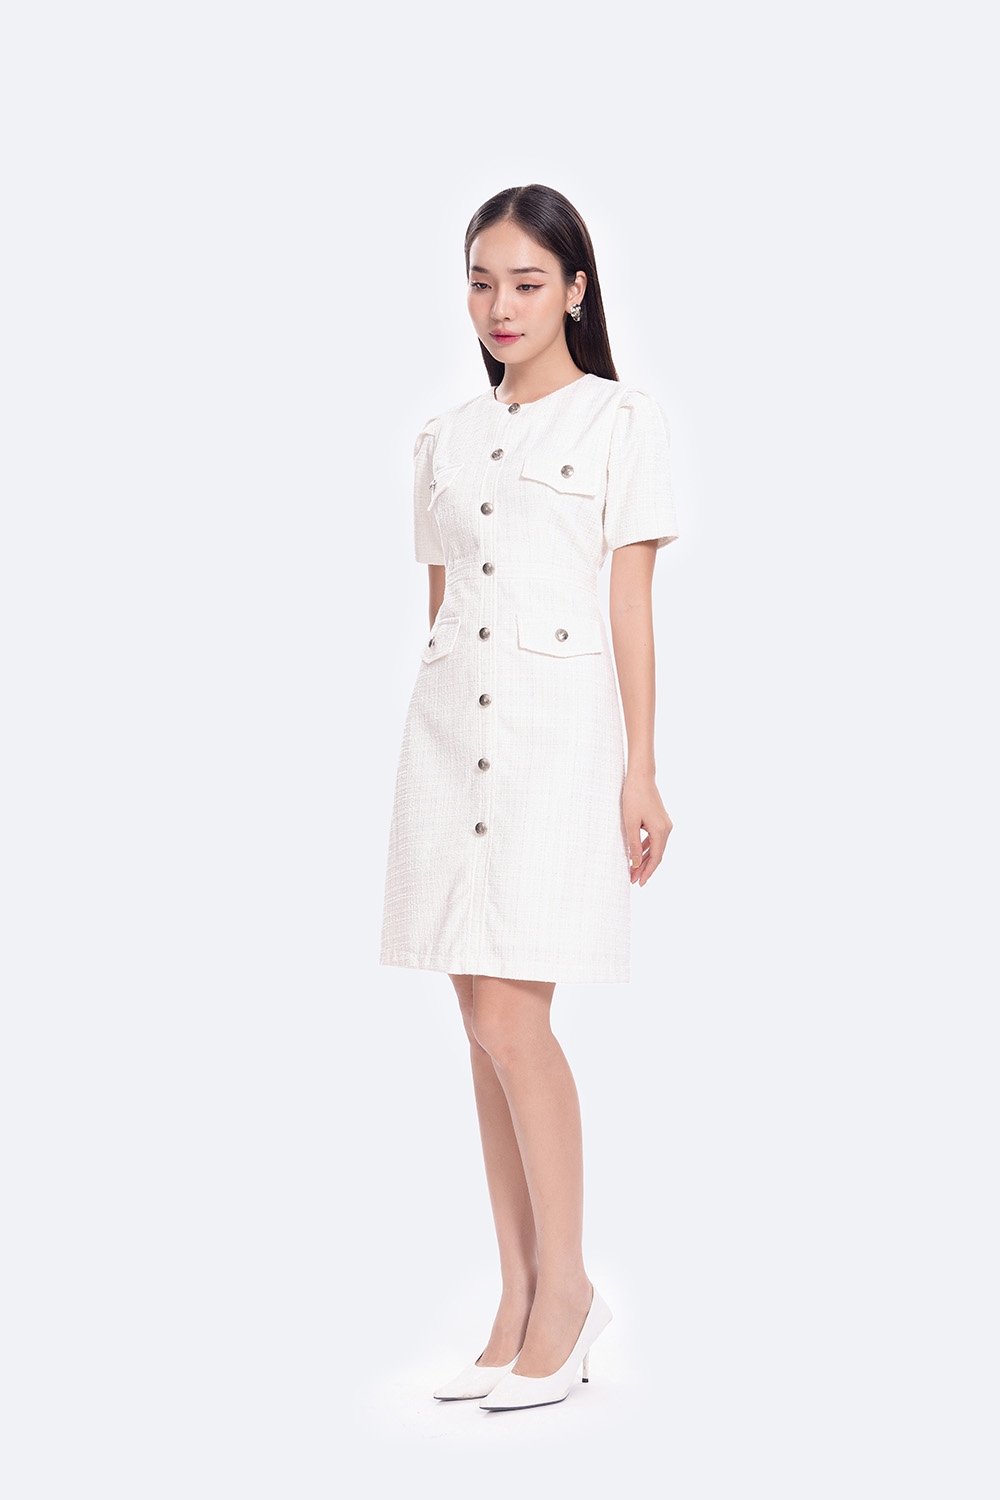 Đầm trắng công sở chữ A phối nút KK118-12 | Thời trang công sở K&K ...